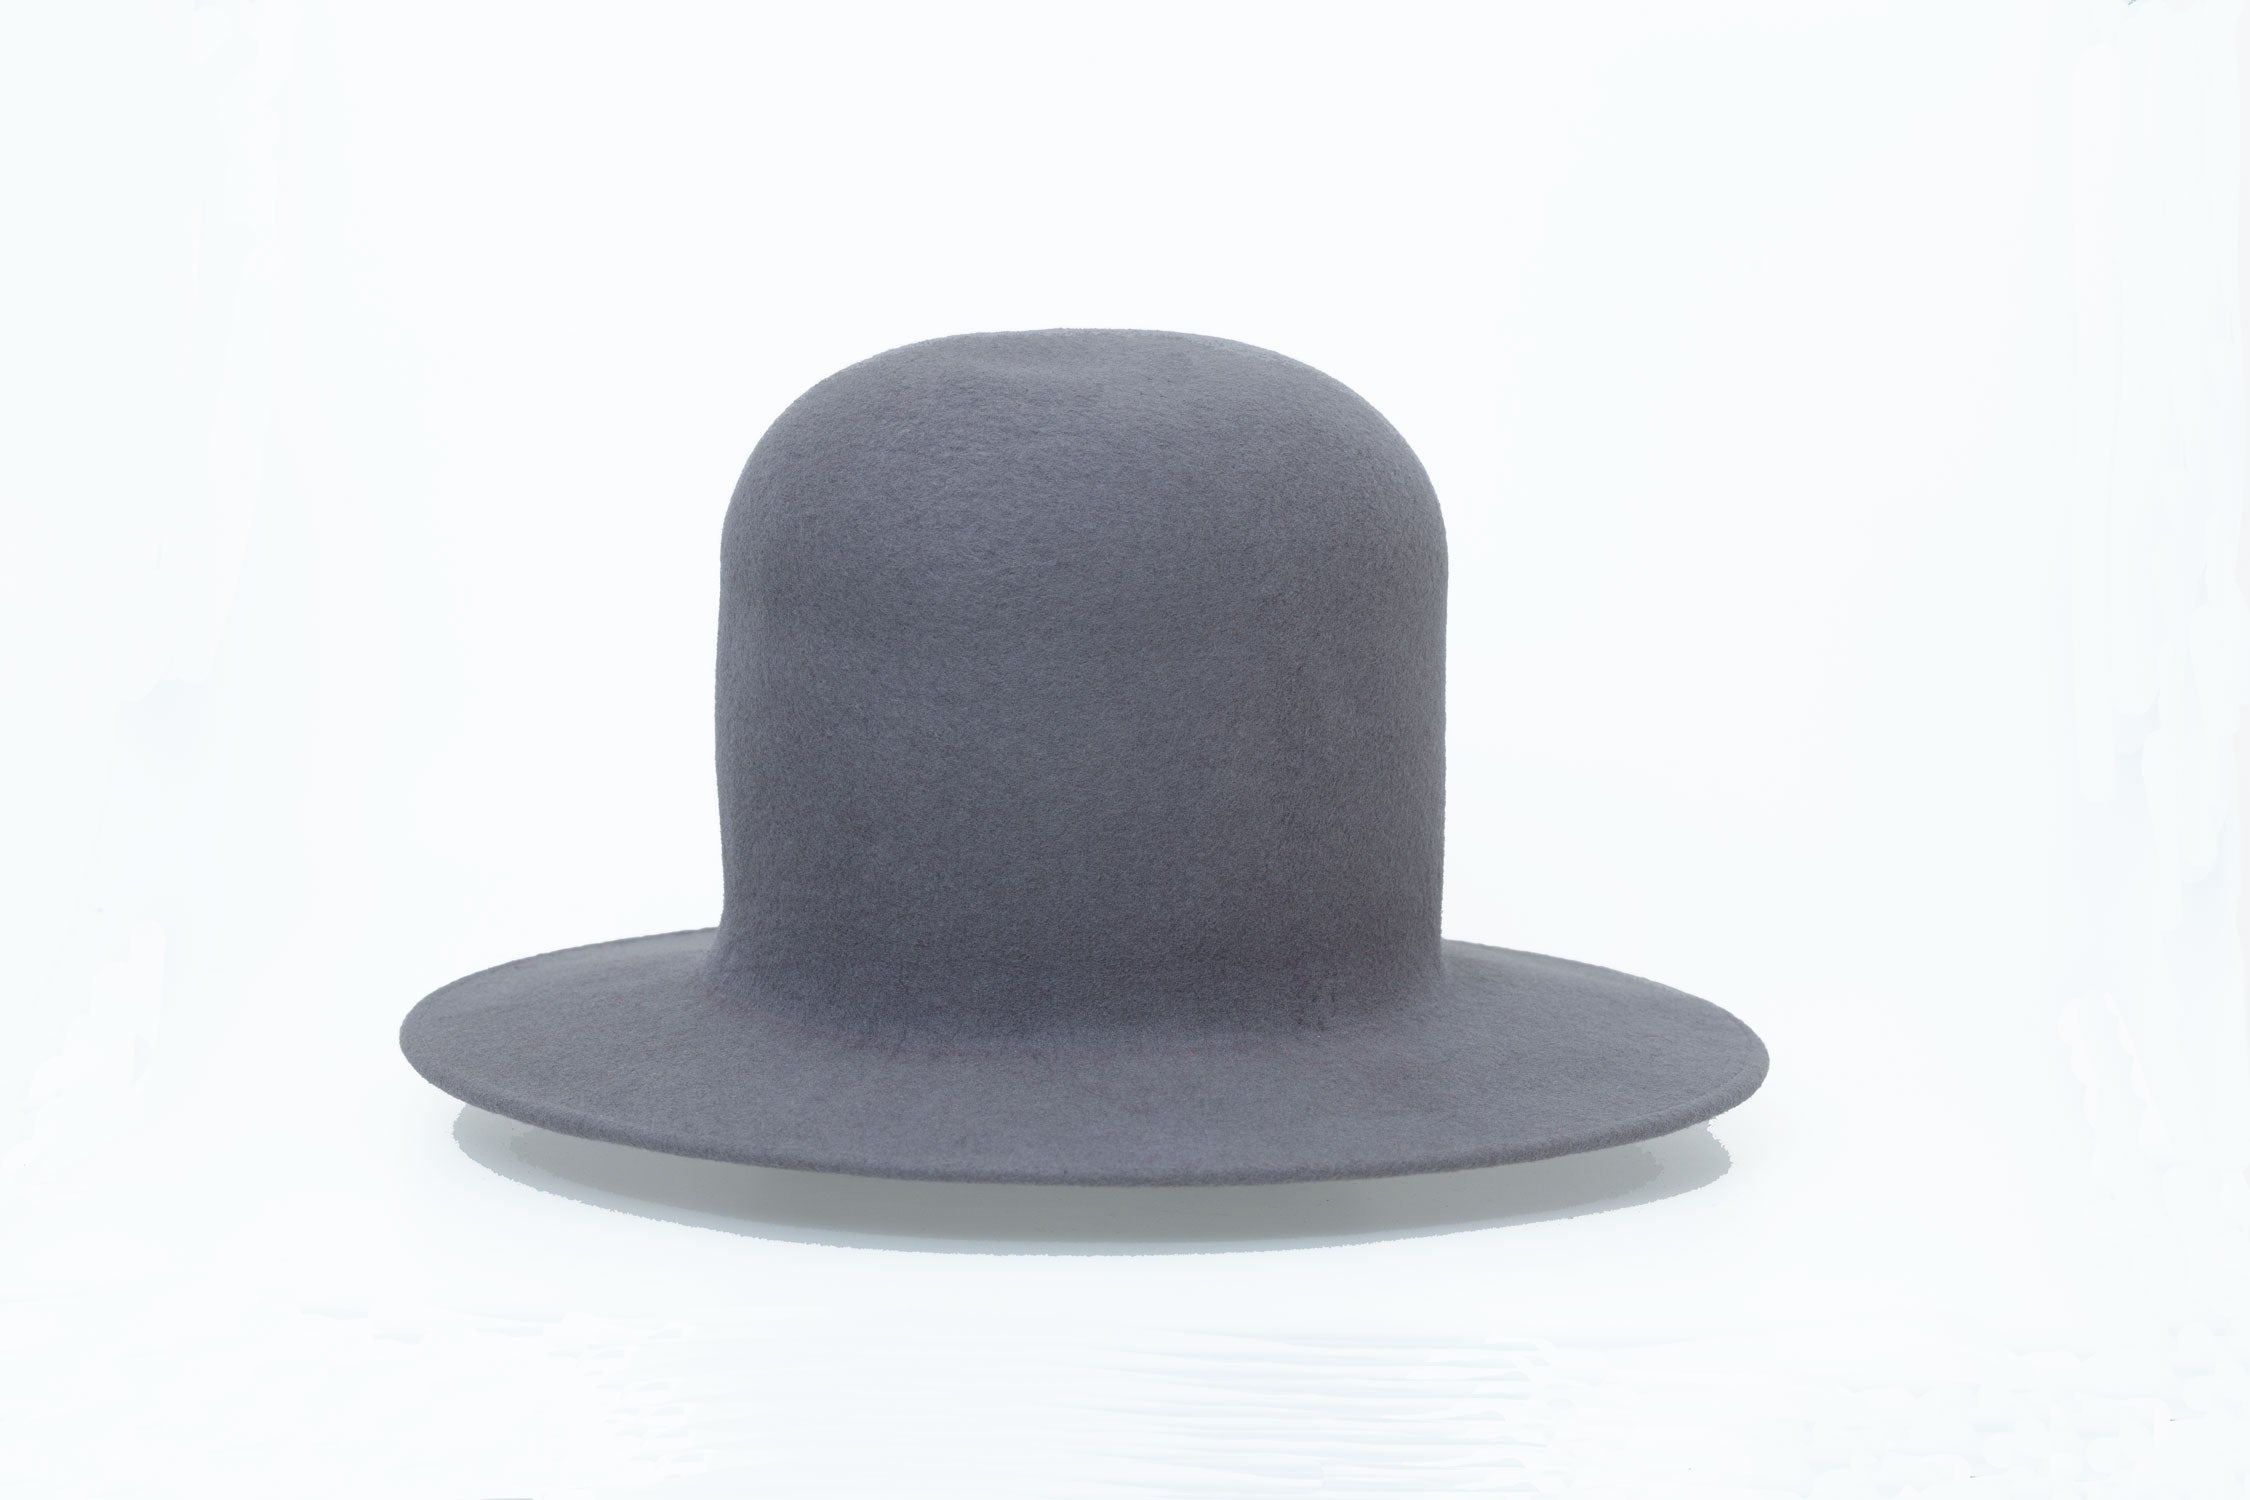 Erykah-Modular-Domed-Hat-in-gray-Wool-Felt-by-OBJECT-_-DAWN.jpg